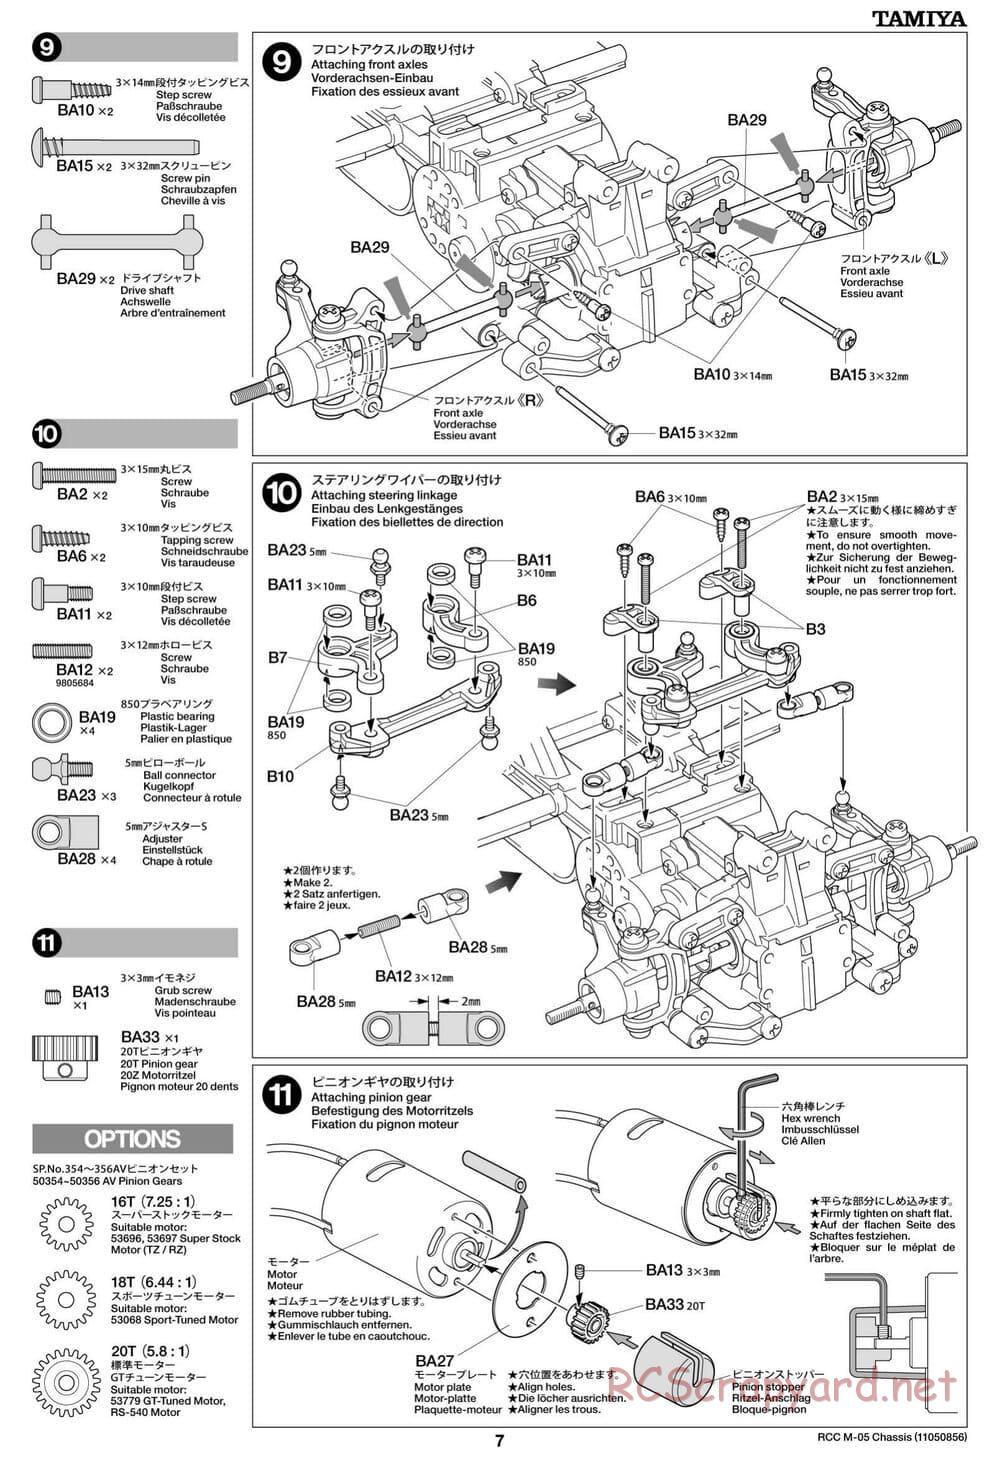 Tamiya - M-05 Chassis - Manual - Page 7